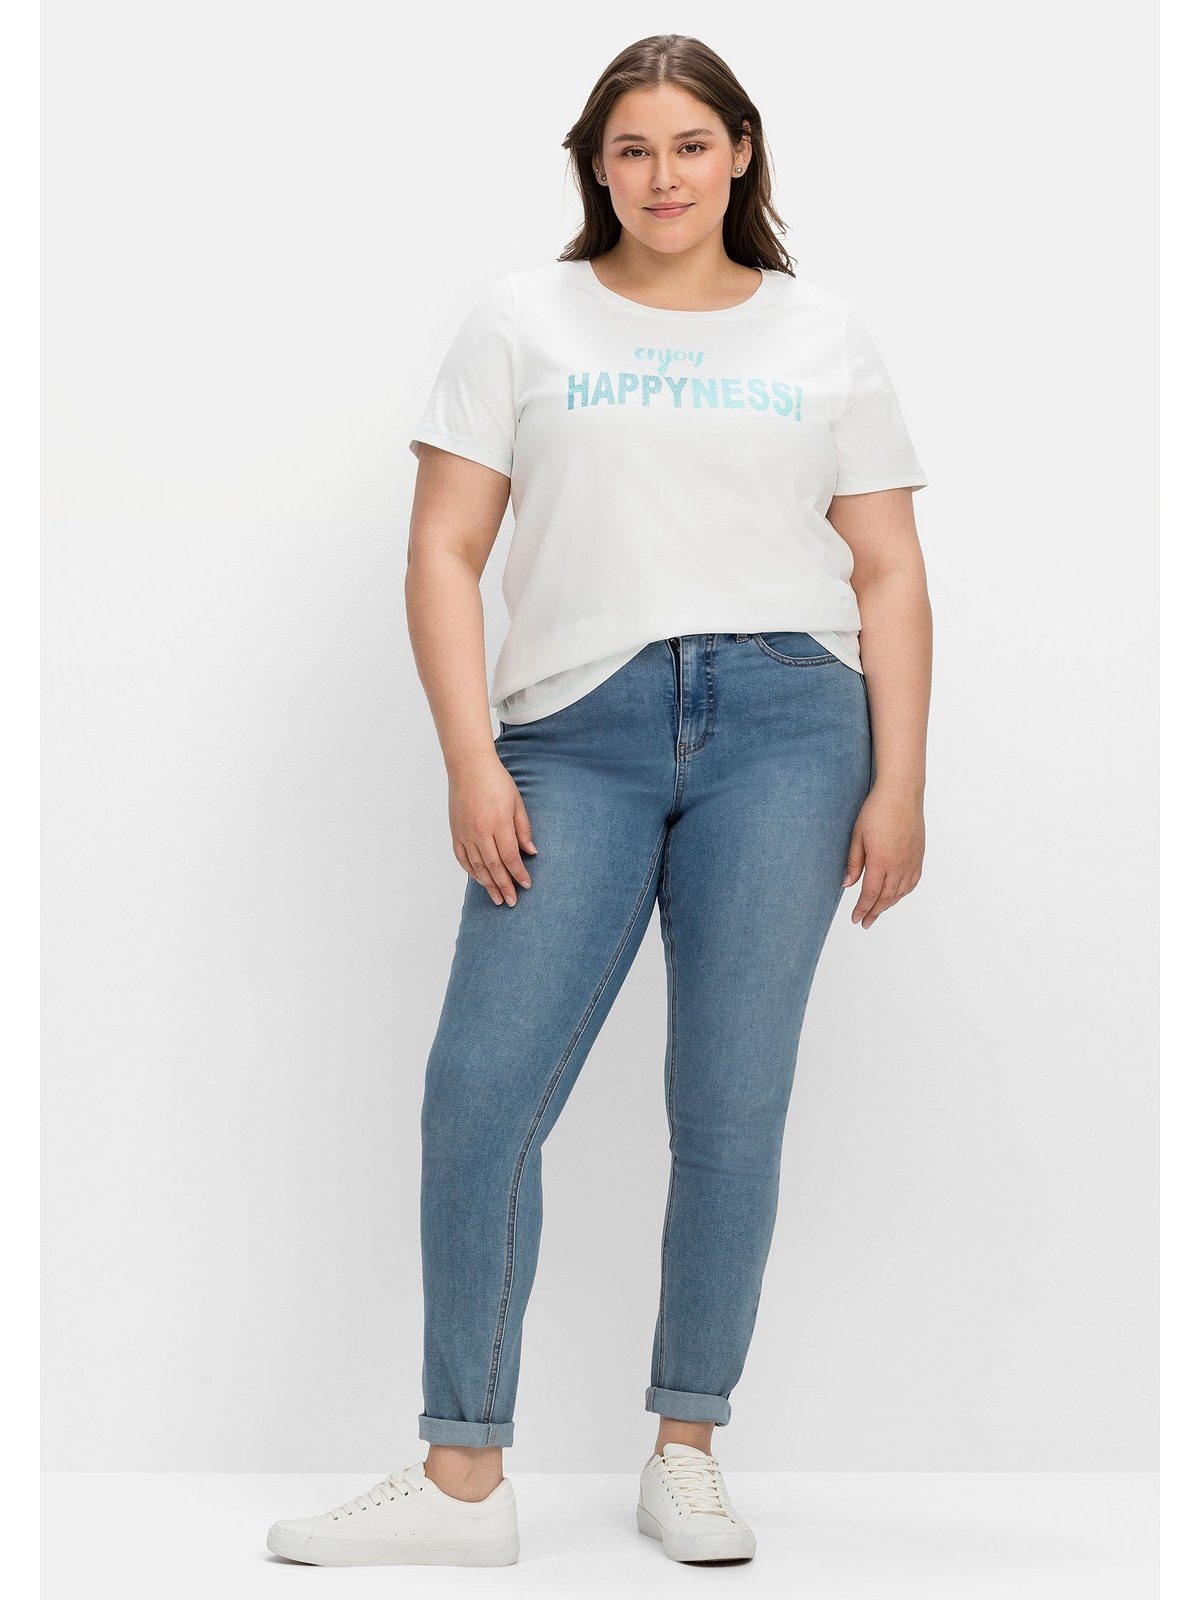 Große weiß tailliert mit Sheego bedruckt T-Shirt Wordingprint, leicht Größen